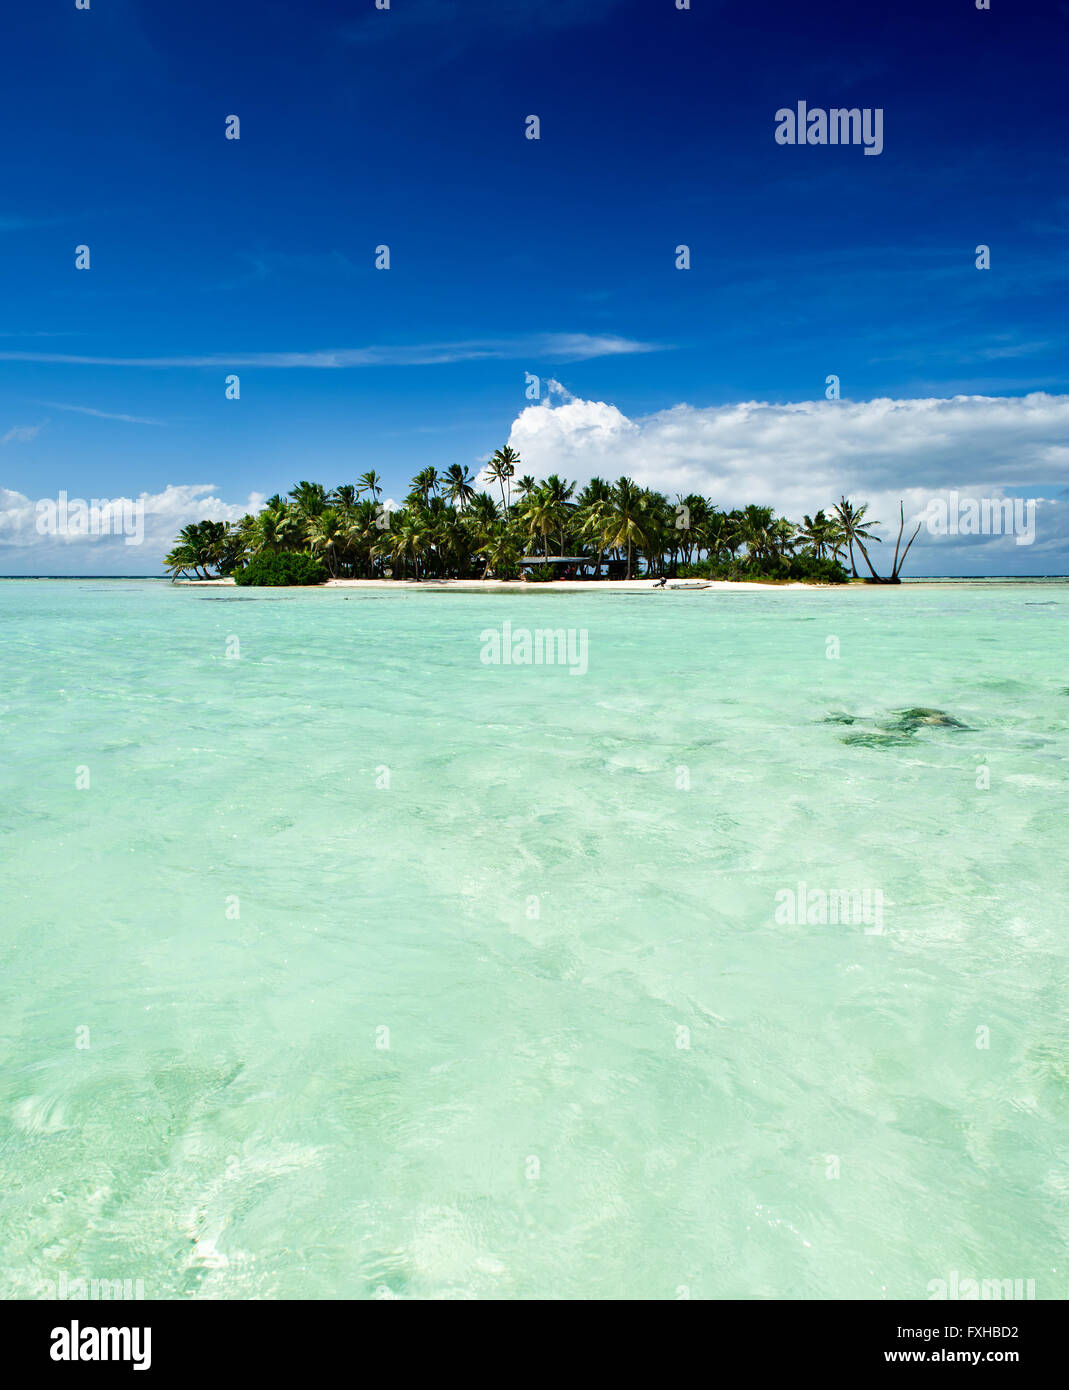 Tropische Wüste oder unbewohnte Insel mit Strand und Palmen in der blauen Lagune in Rangiroa Atoll in der Nähe von Tahiti, Polynesien Stockfoto